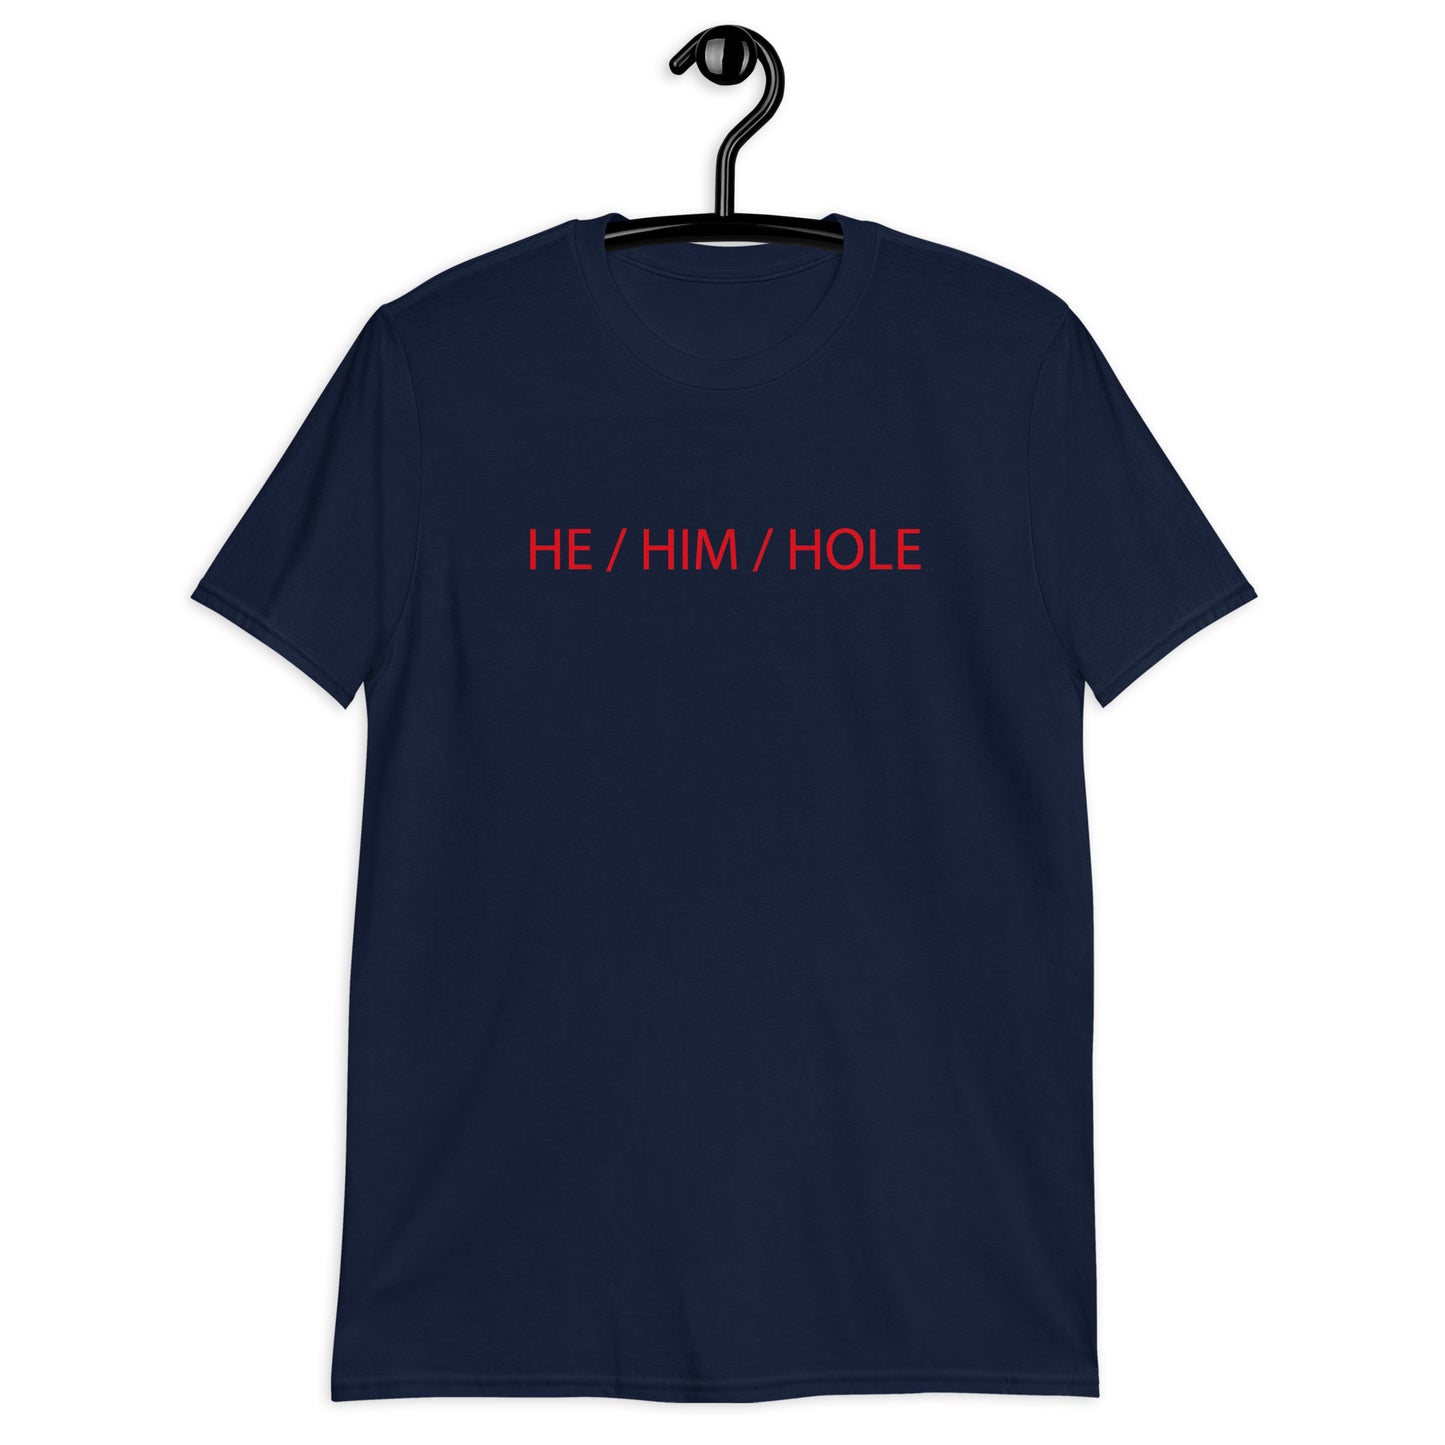 HE / HIM / HOLE Short-Sleeve Unisex T-Shirt